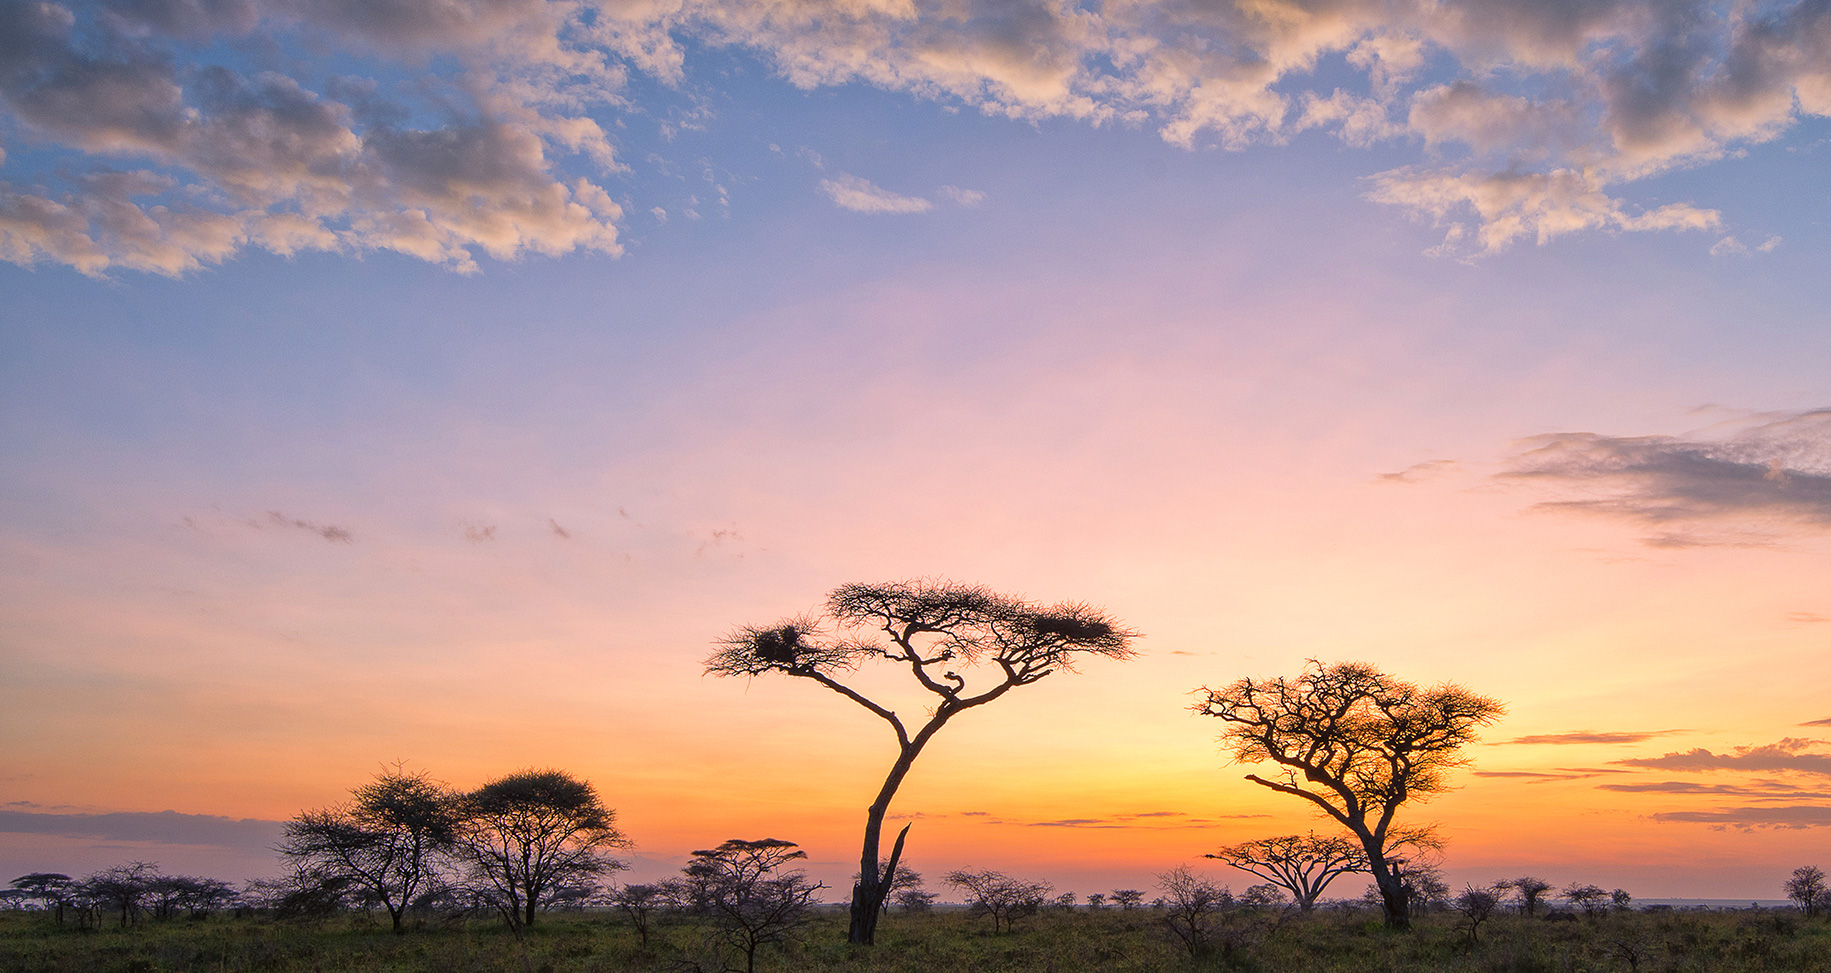 Africa Landscape